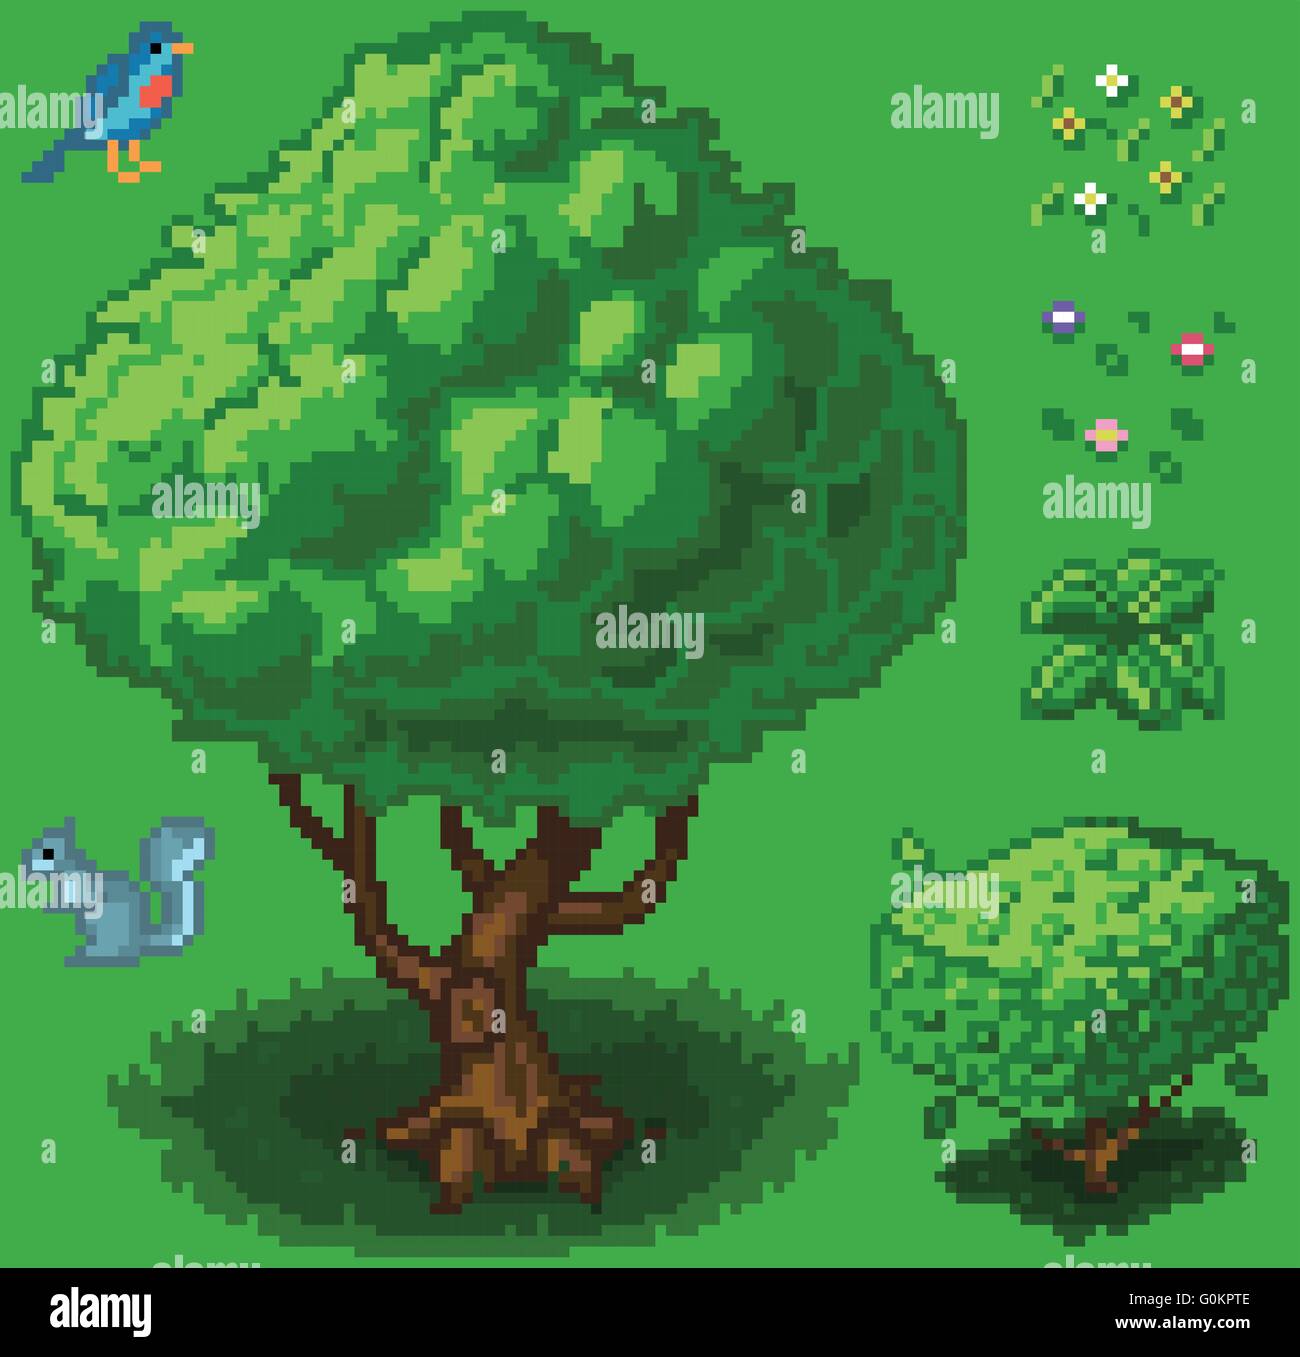 Vector illustration icon set d'un arbre, arbuste, un écureuil, un oiseau, une petite plante et fleurs créé en tant que jeu vidéo pixel art. Illustration de Vecteur